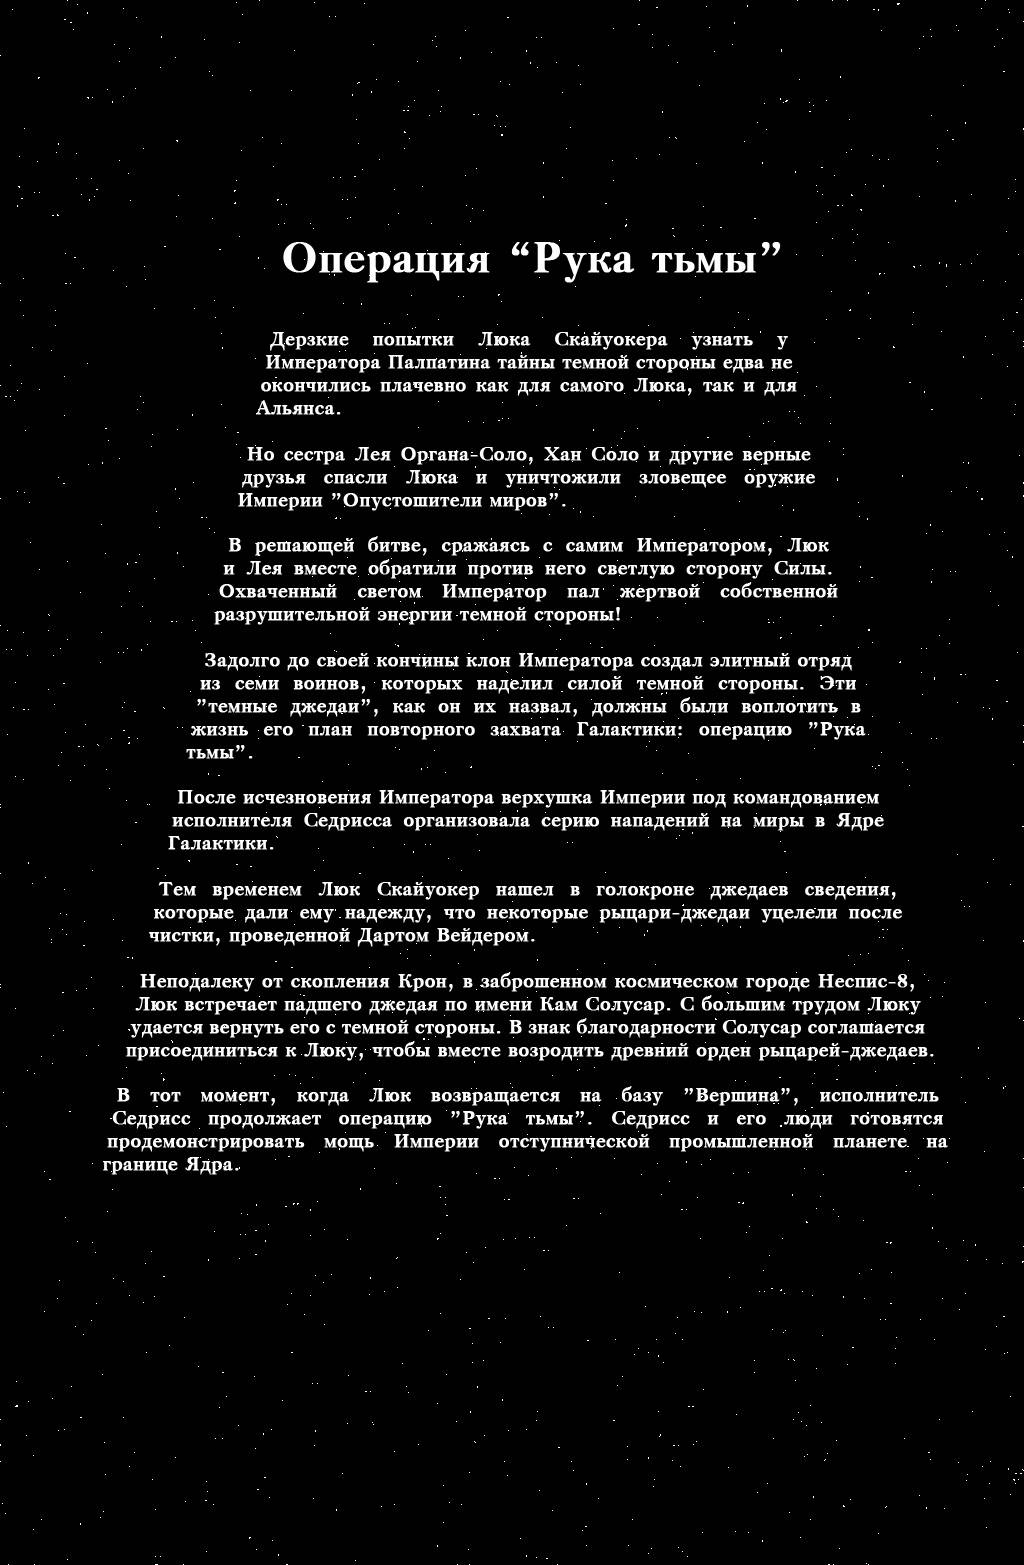 Звездные Войны: Темная Империя II №1 онлайн